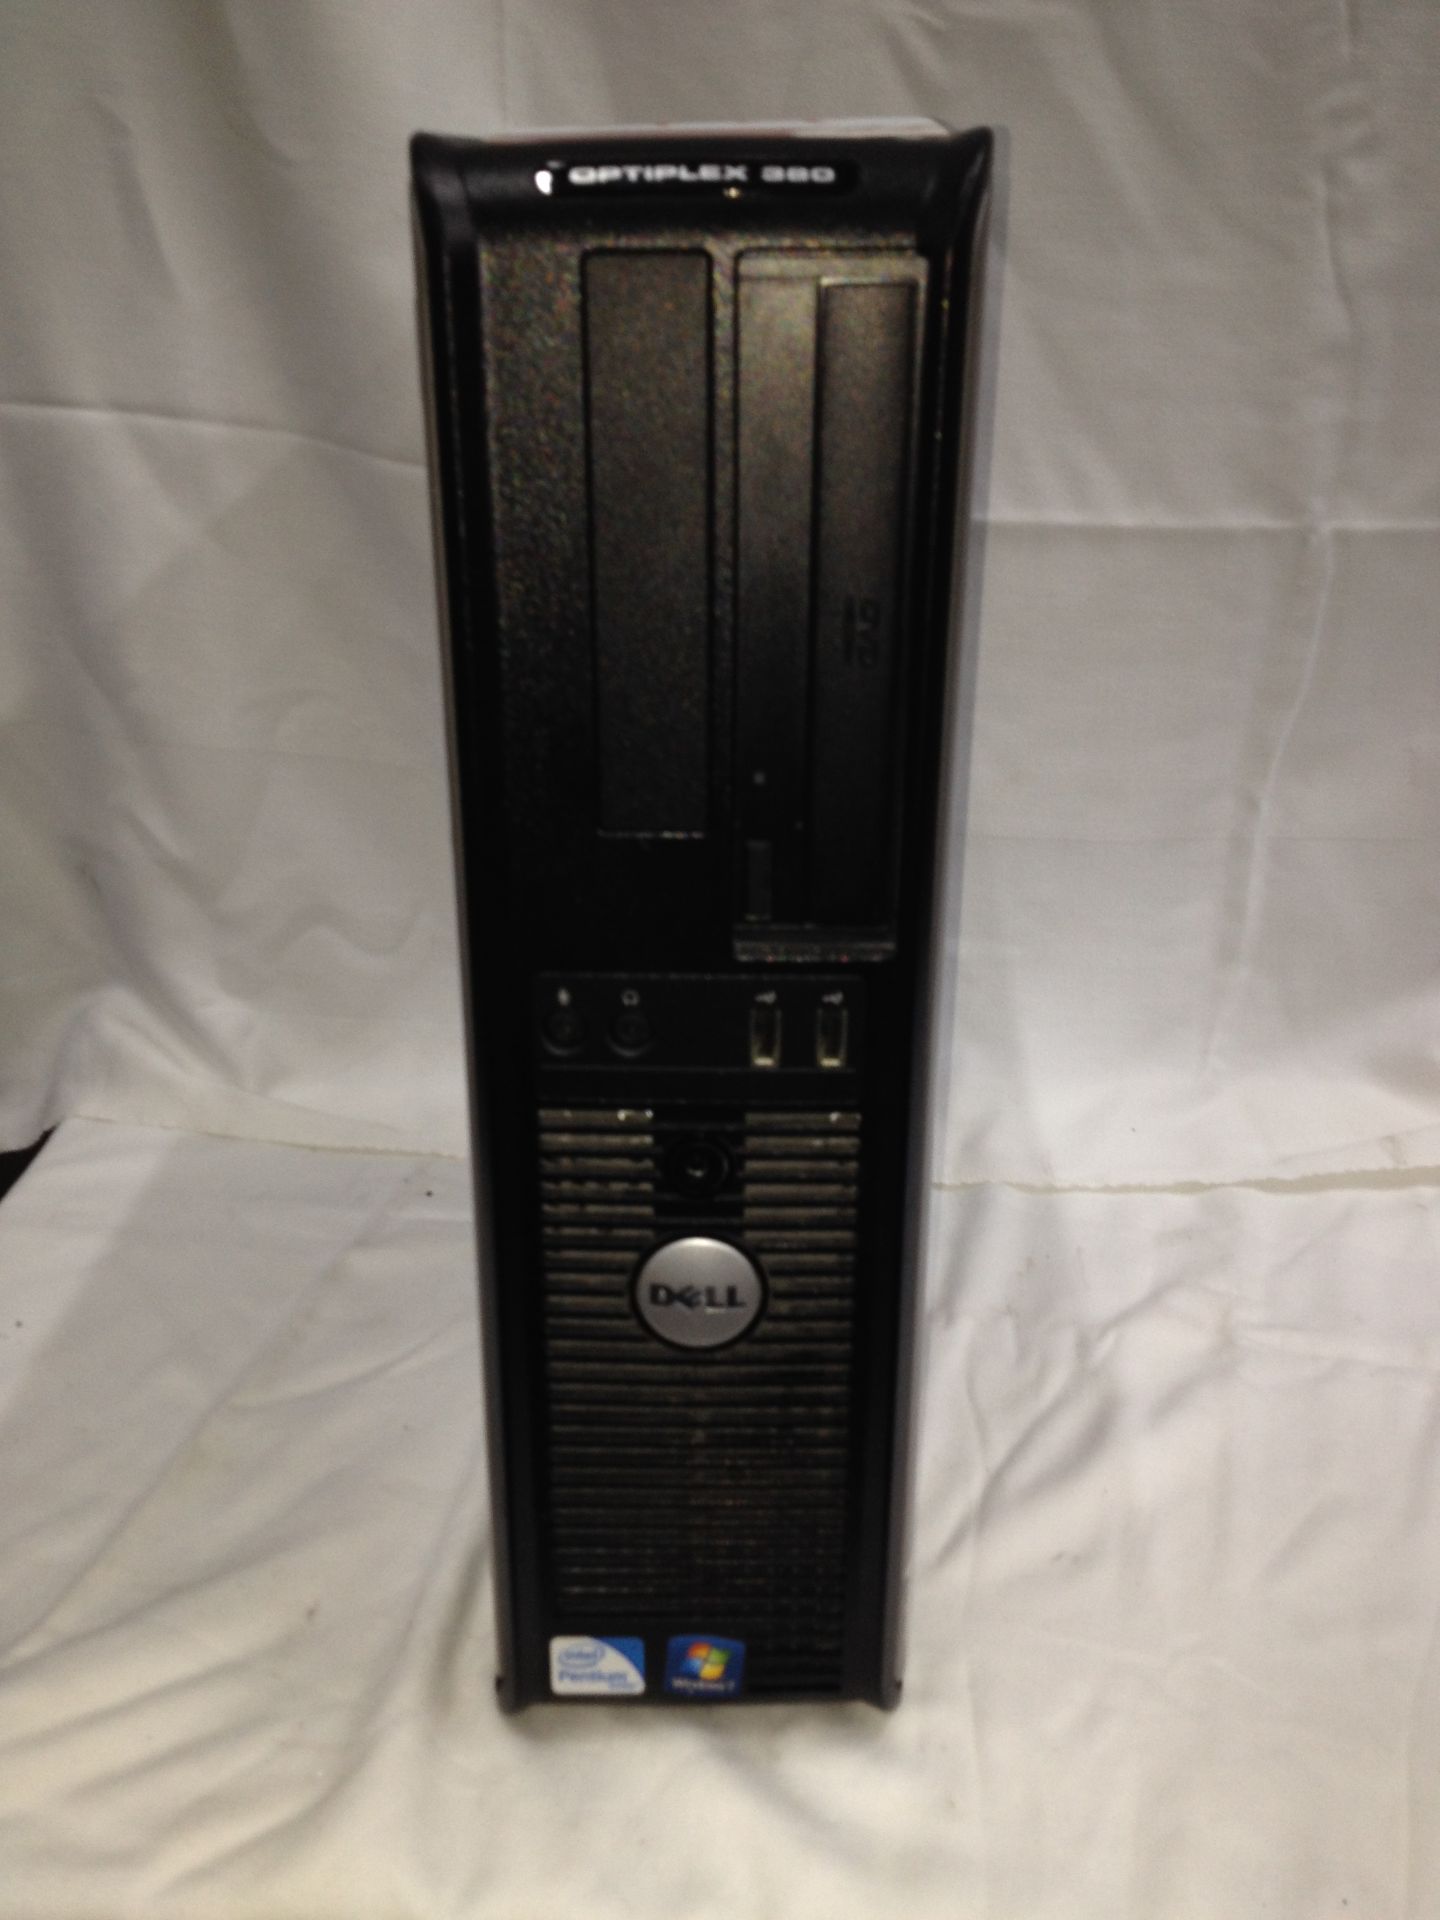 Dell Optiplex 380 PC - Image 2 of 2